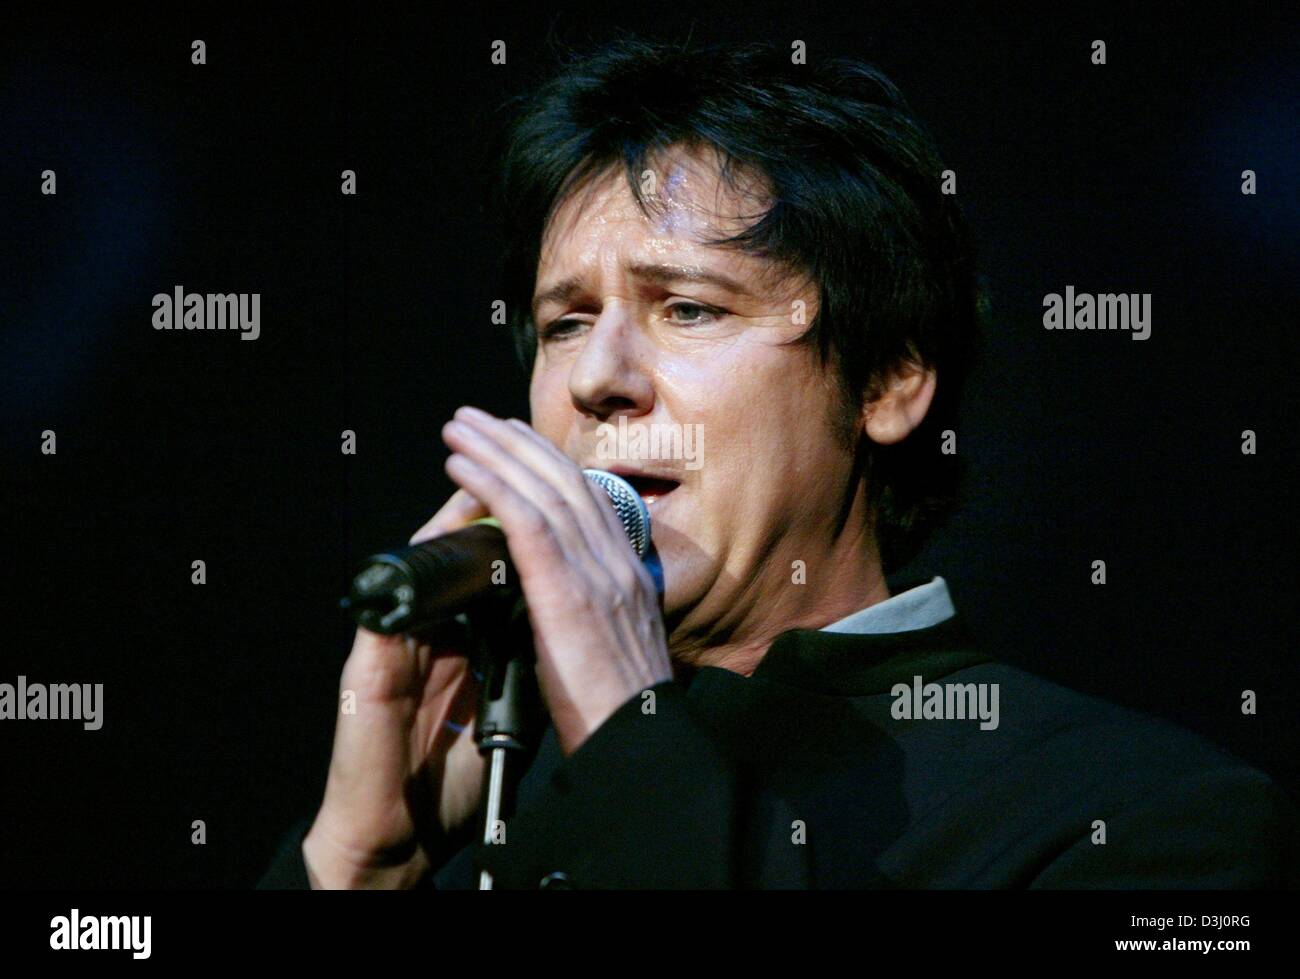 während der 22. Wiener Opernball in Frankfurt am Samstag, 21. Februar 2004 durchführt (Dpa) - Rock star Shakin ' Stevens. Unter dem Motto waren "Rock'n" Farben etwa 2.300 geladenen Gäste bis spät in die Nacht feiern. Stockfoto